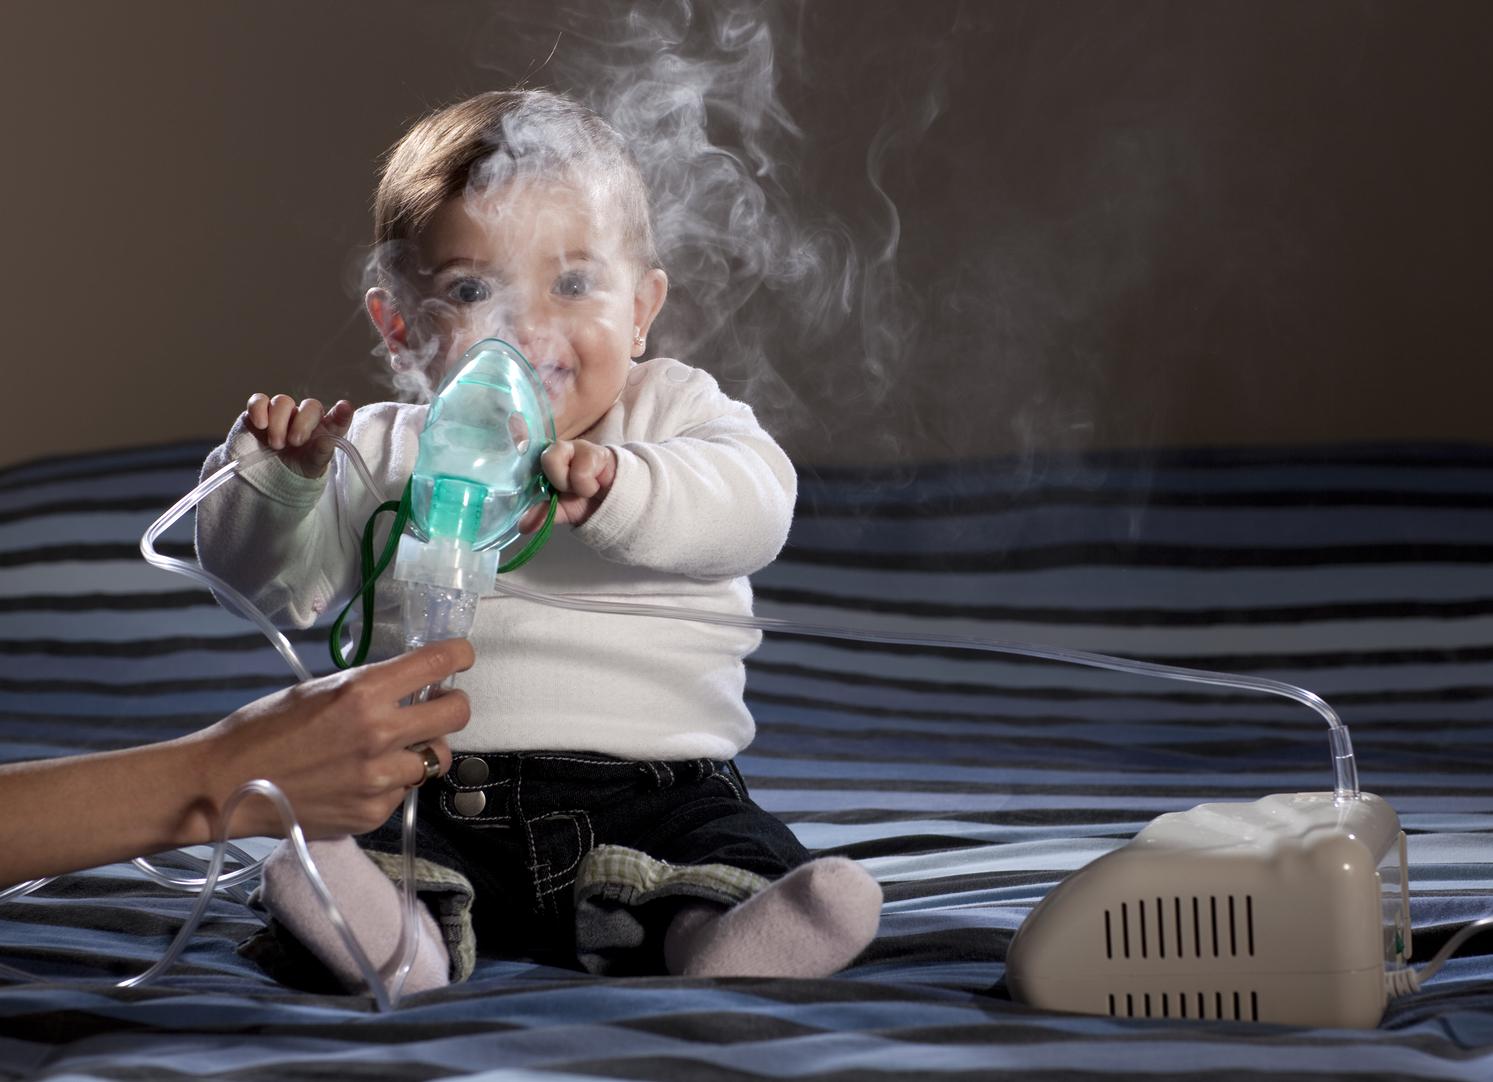 Comment Reagir Face A Une Crise D Asthme Lesprosdelapetiteenfance